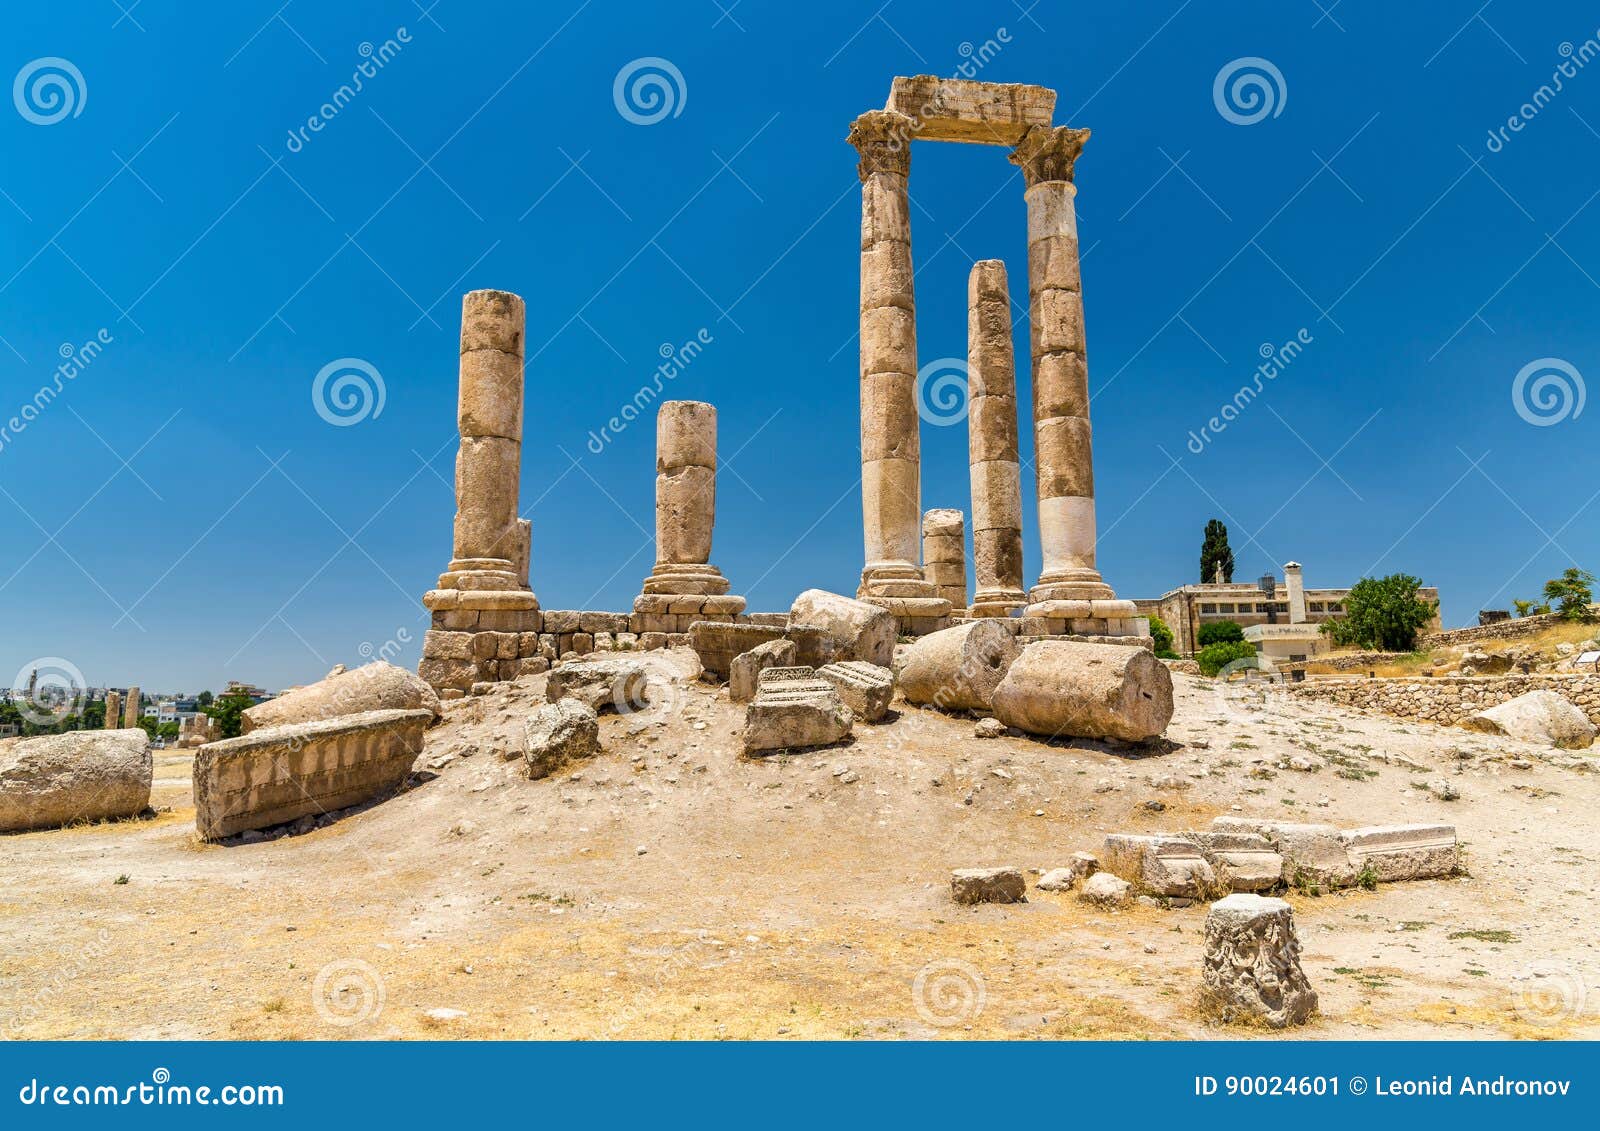 temple of hercules at the amman citadel, jabal al-qal`a